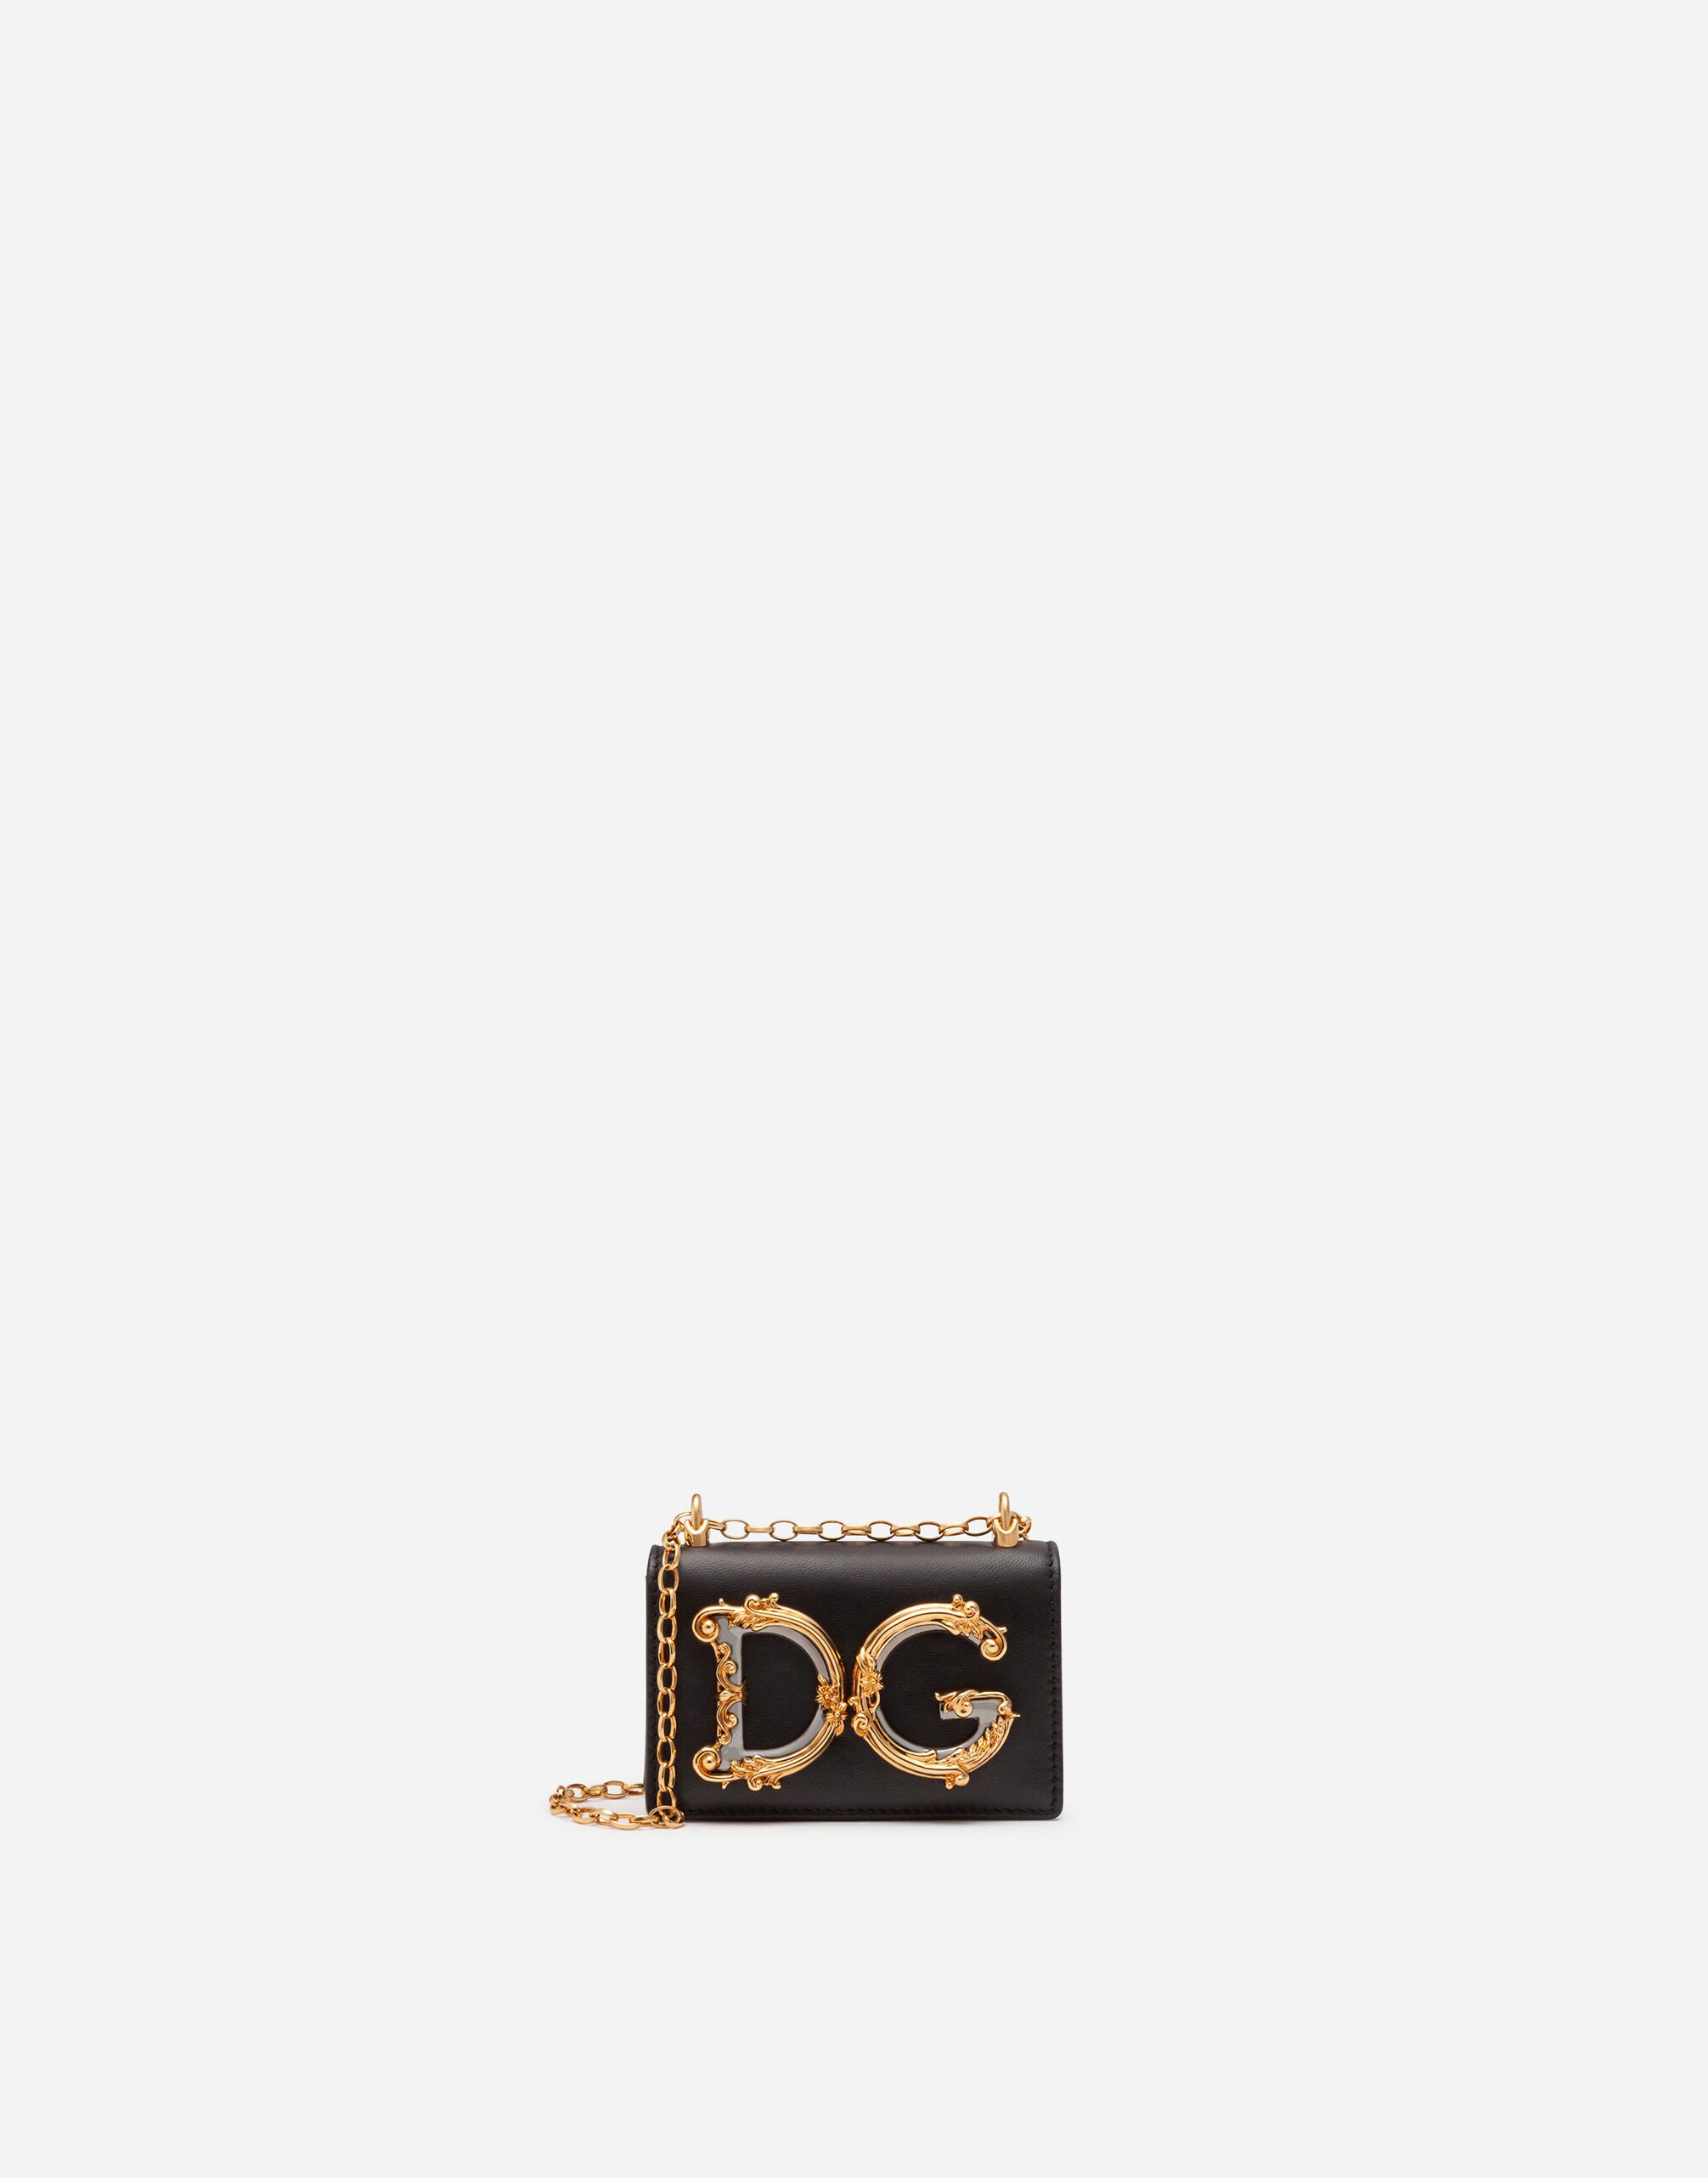 Dolce & Gabbana DG GIRLS マイクロバッグ スムースカーフスキン レッド BB6498AQ963